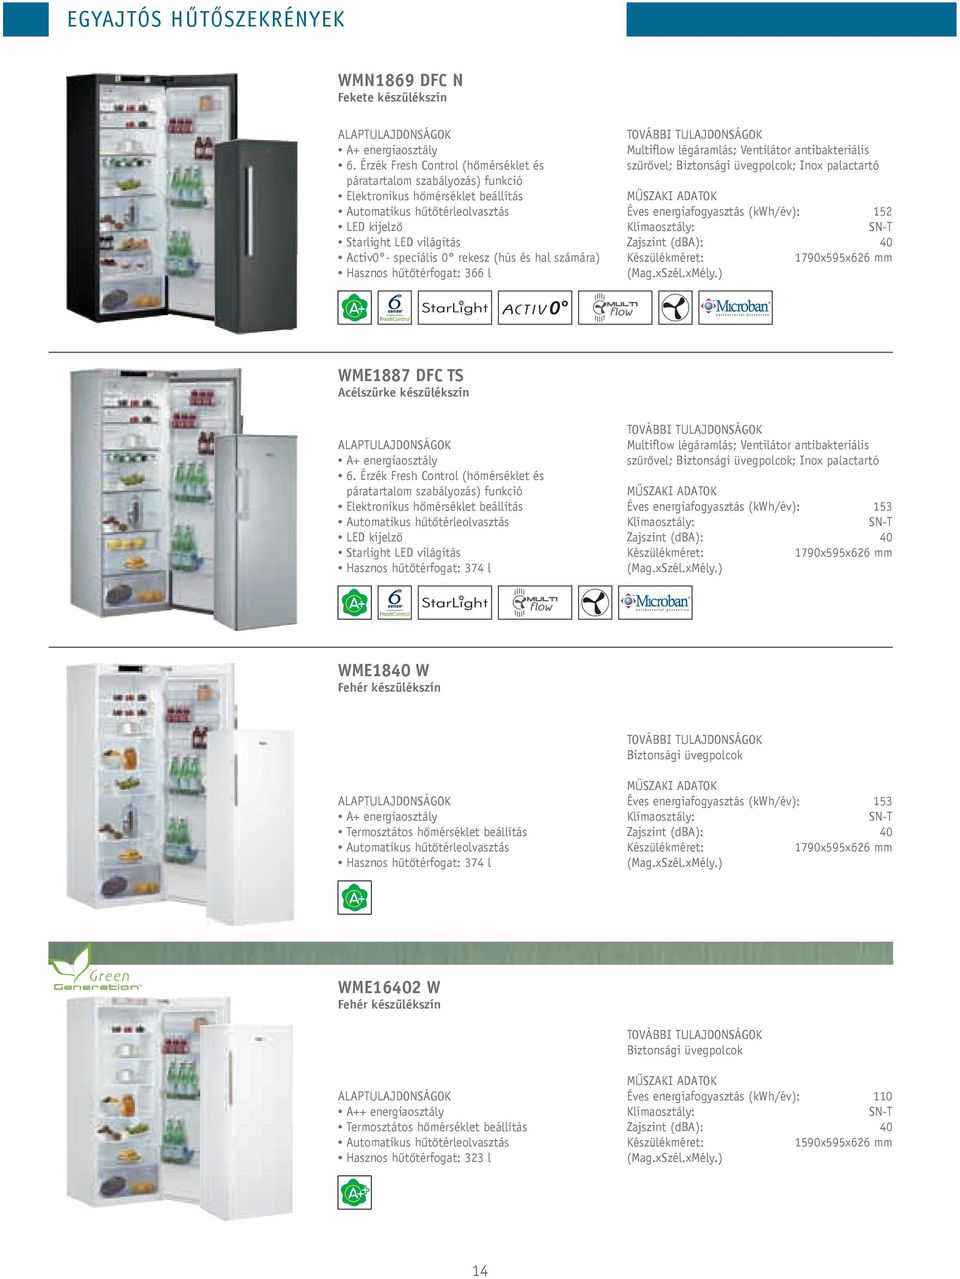 (hús és hal számára) Hasznos hűtőtérfogat: 366 l Multiflow légáramlás; Ventilátor antibakteriális szűrővel; Biztonsági üvegpolcok; Inox palactartó Éves energiafogyasztás (kwh/év): 152 SN-T Zajszint